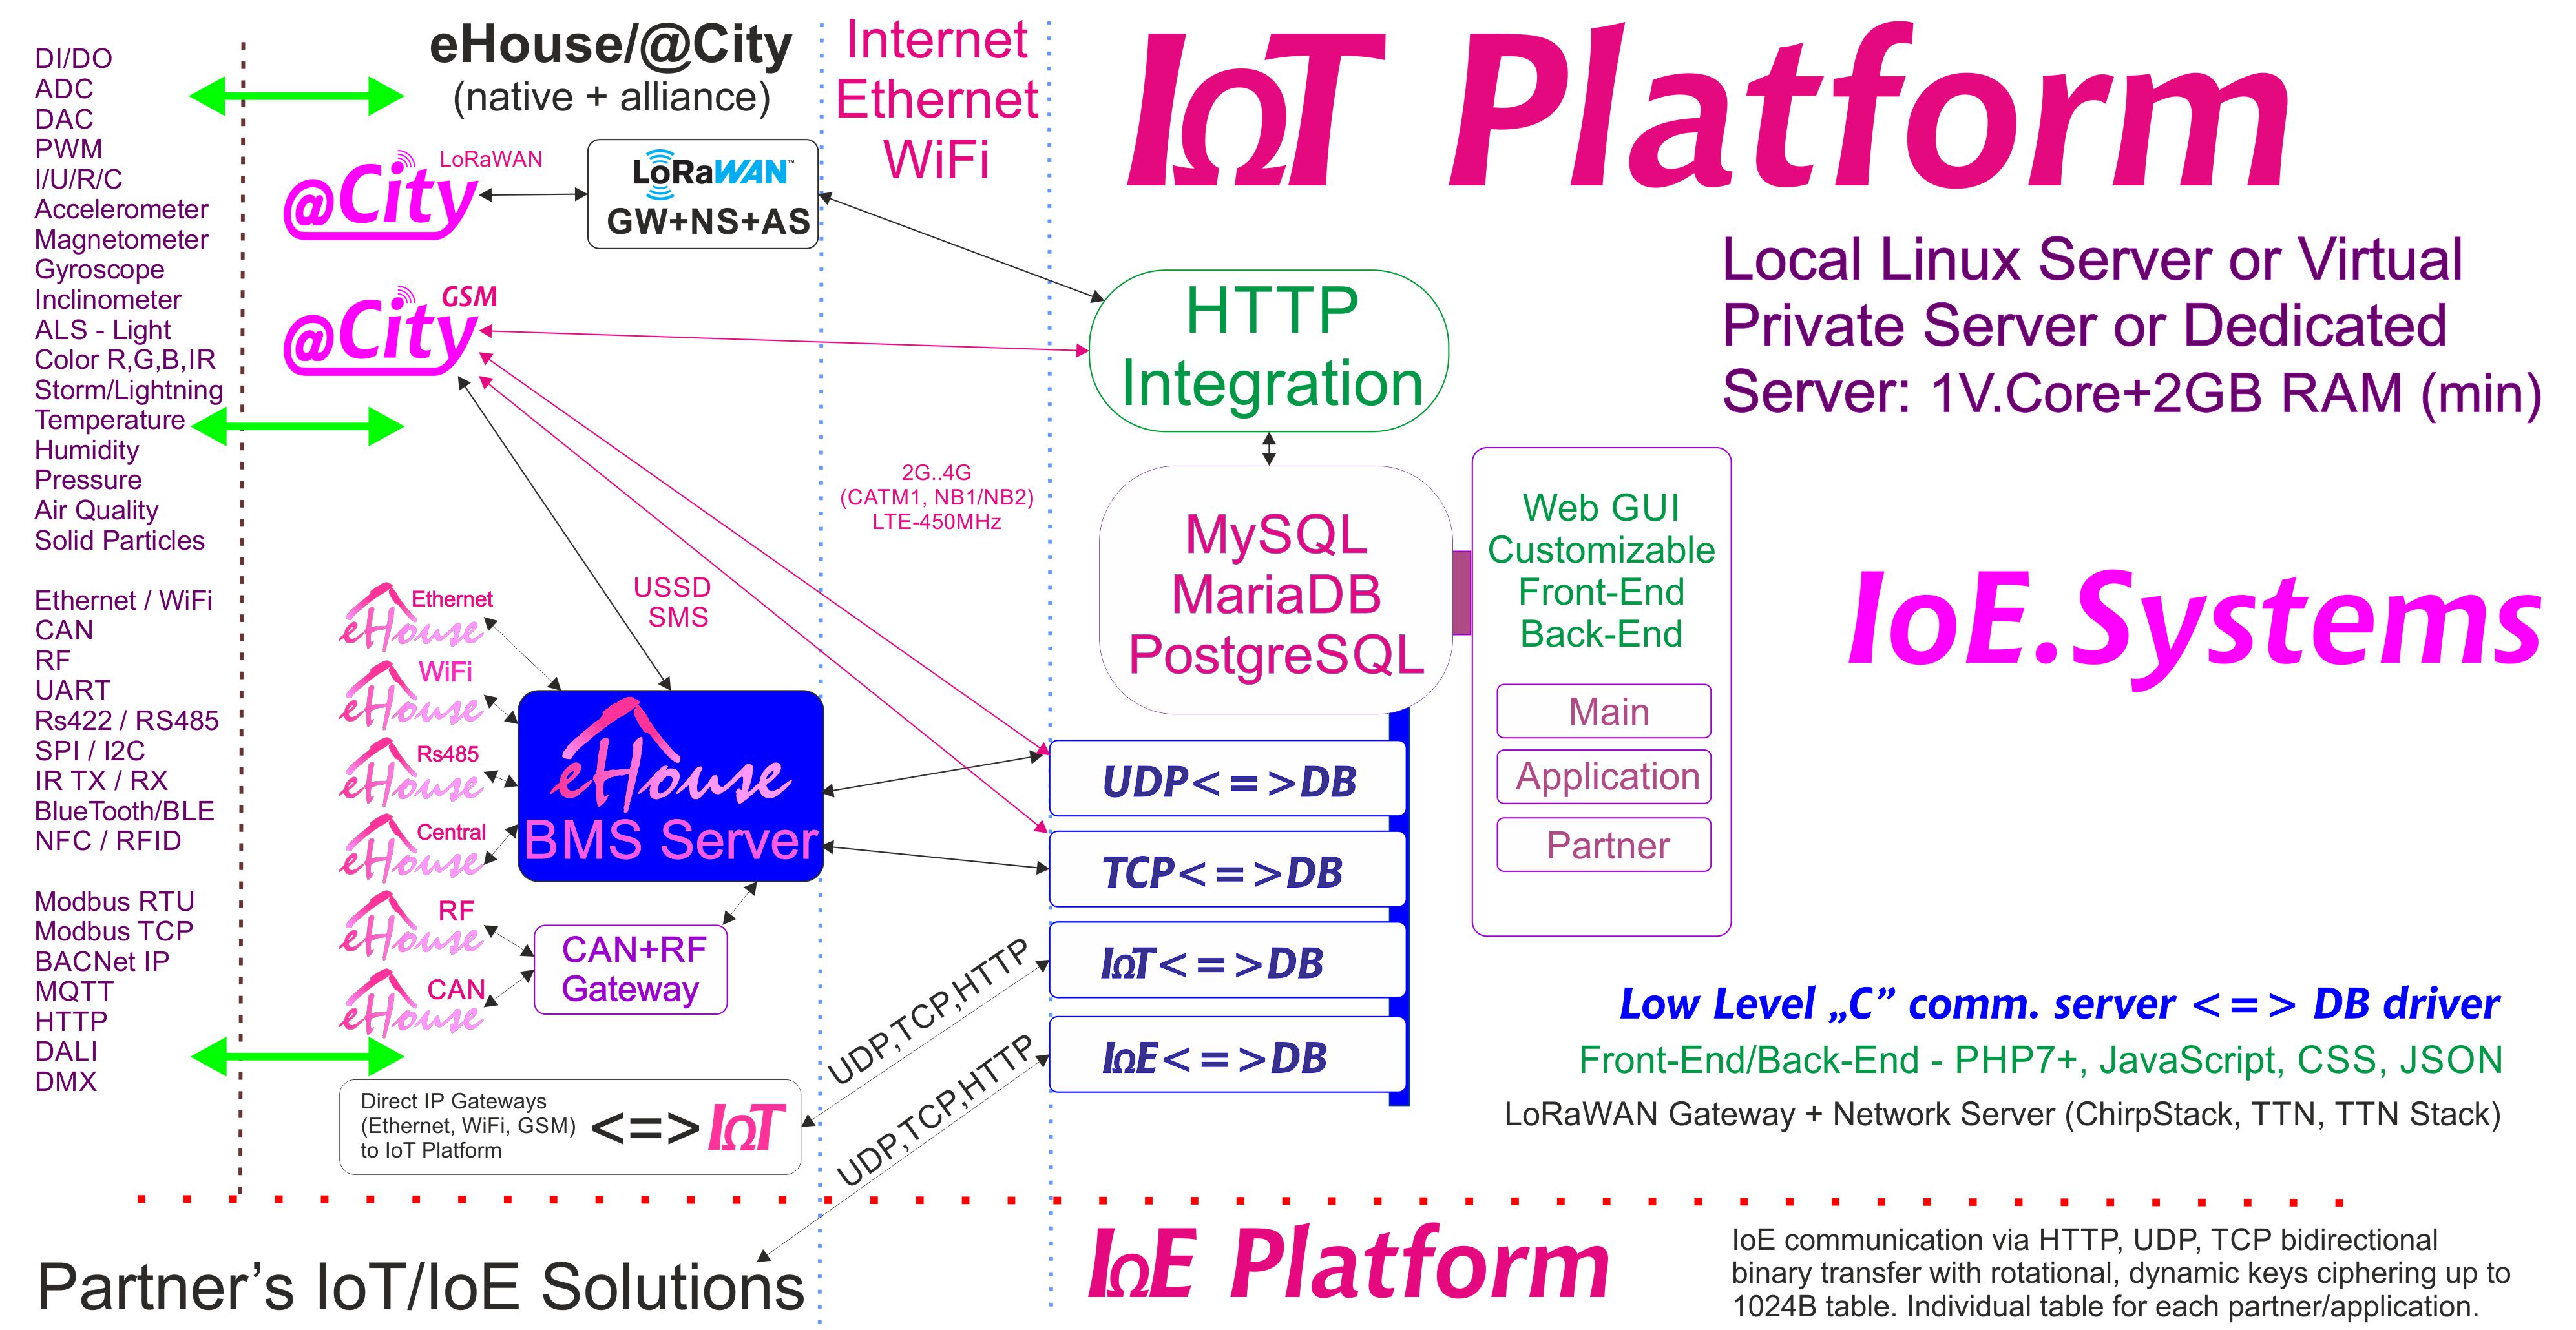 eHouse, software de servidor eCity BAS, BMS, IoE, sistemas e plataforma IoT